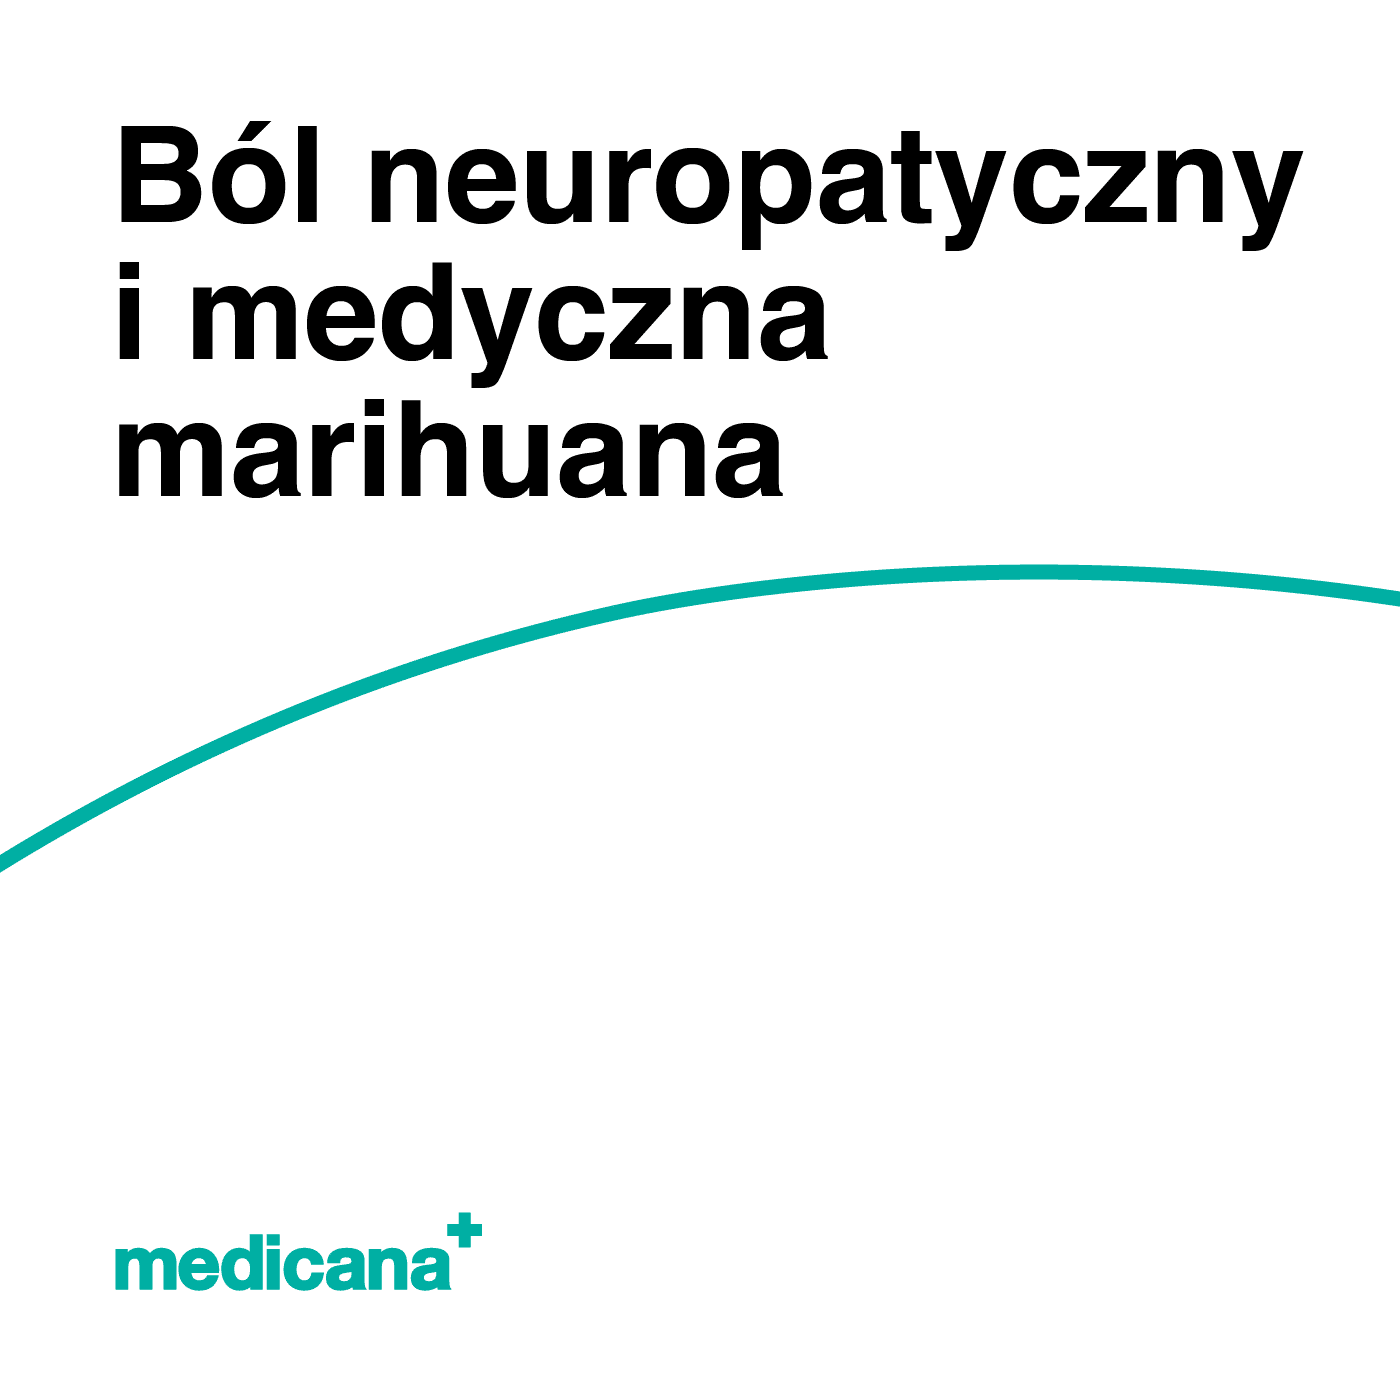 Grafika, na białym tle czarny napis: Ból neuropatyczny i medyczna marihuana oraz zielone logo Medicana Centrum Terapii  Marihuana Lecznicza w lewym dolnym rogu.